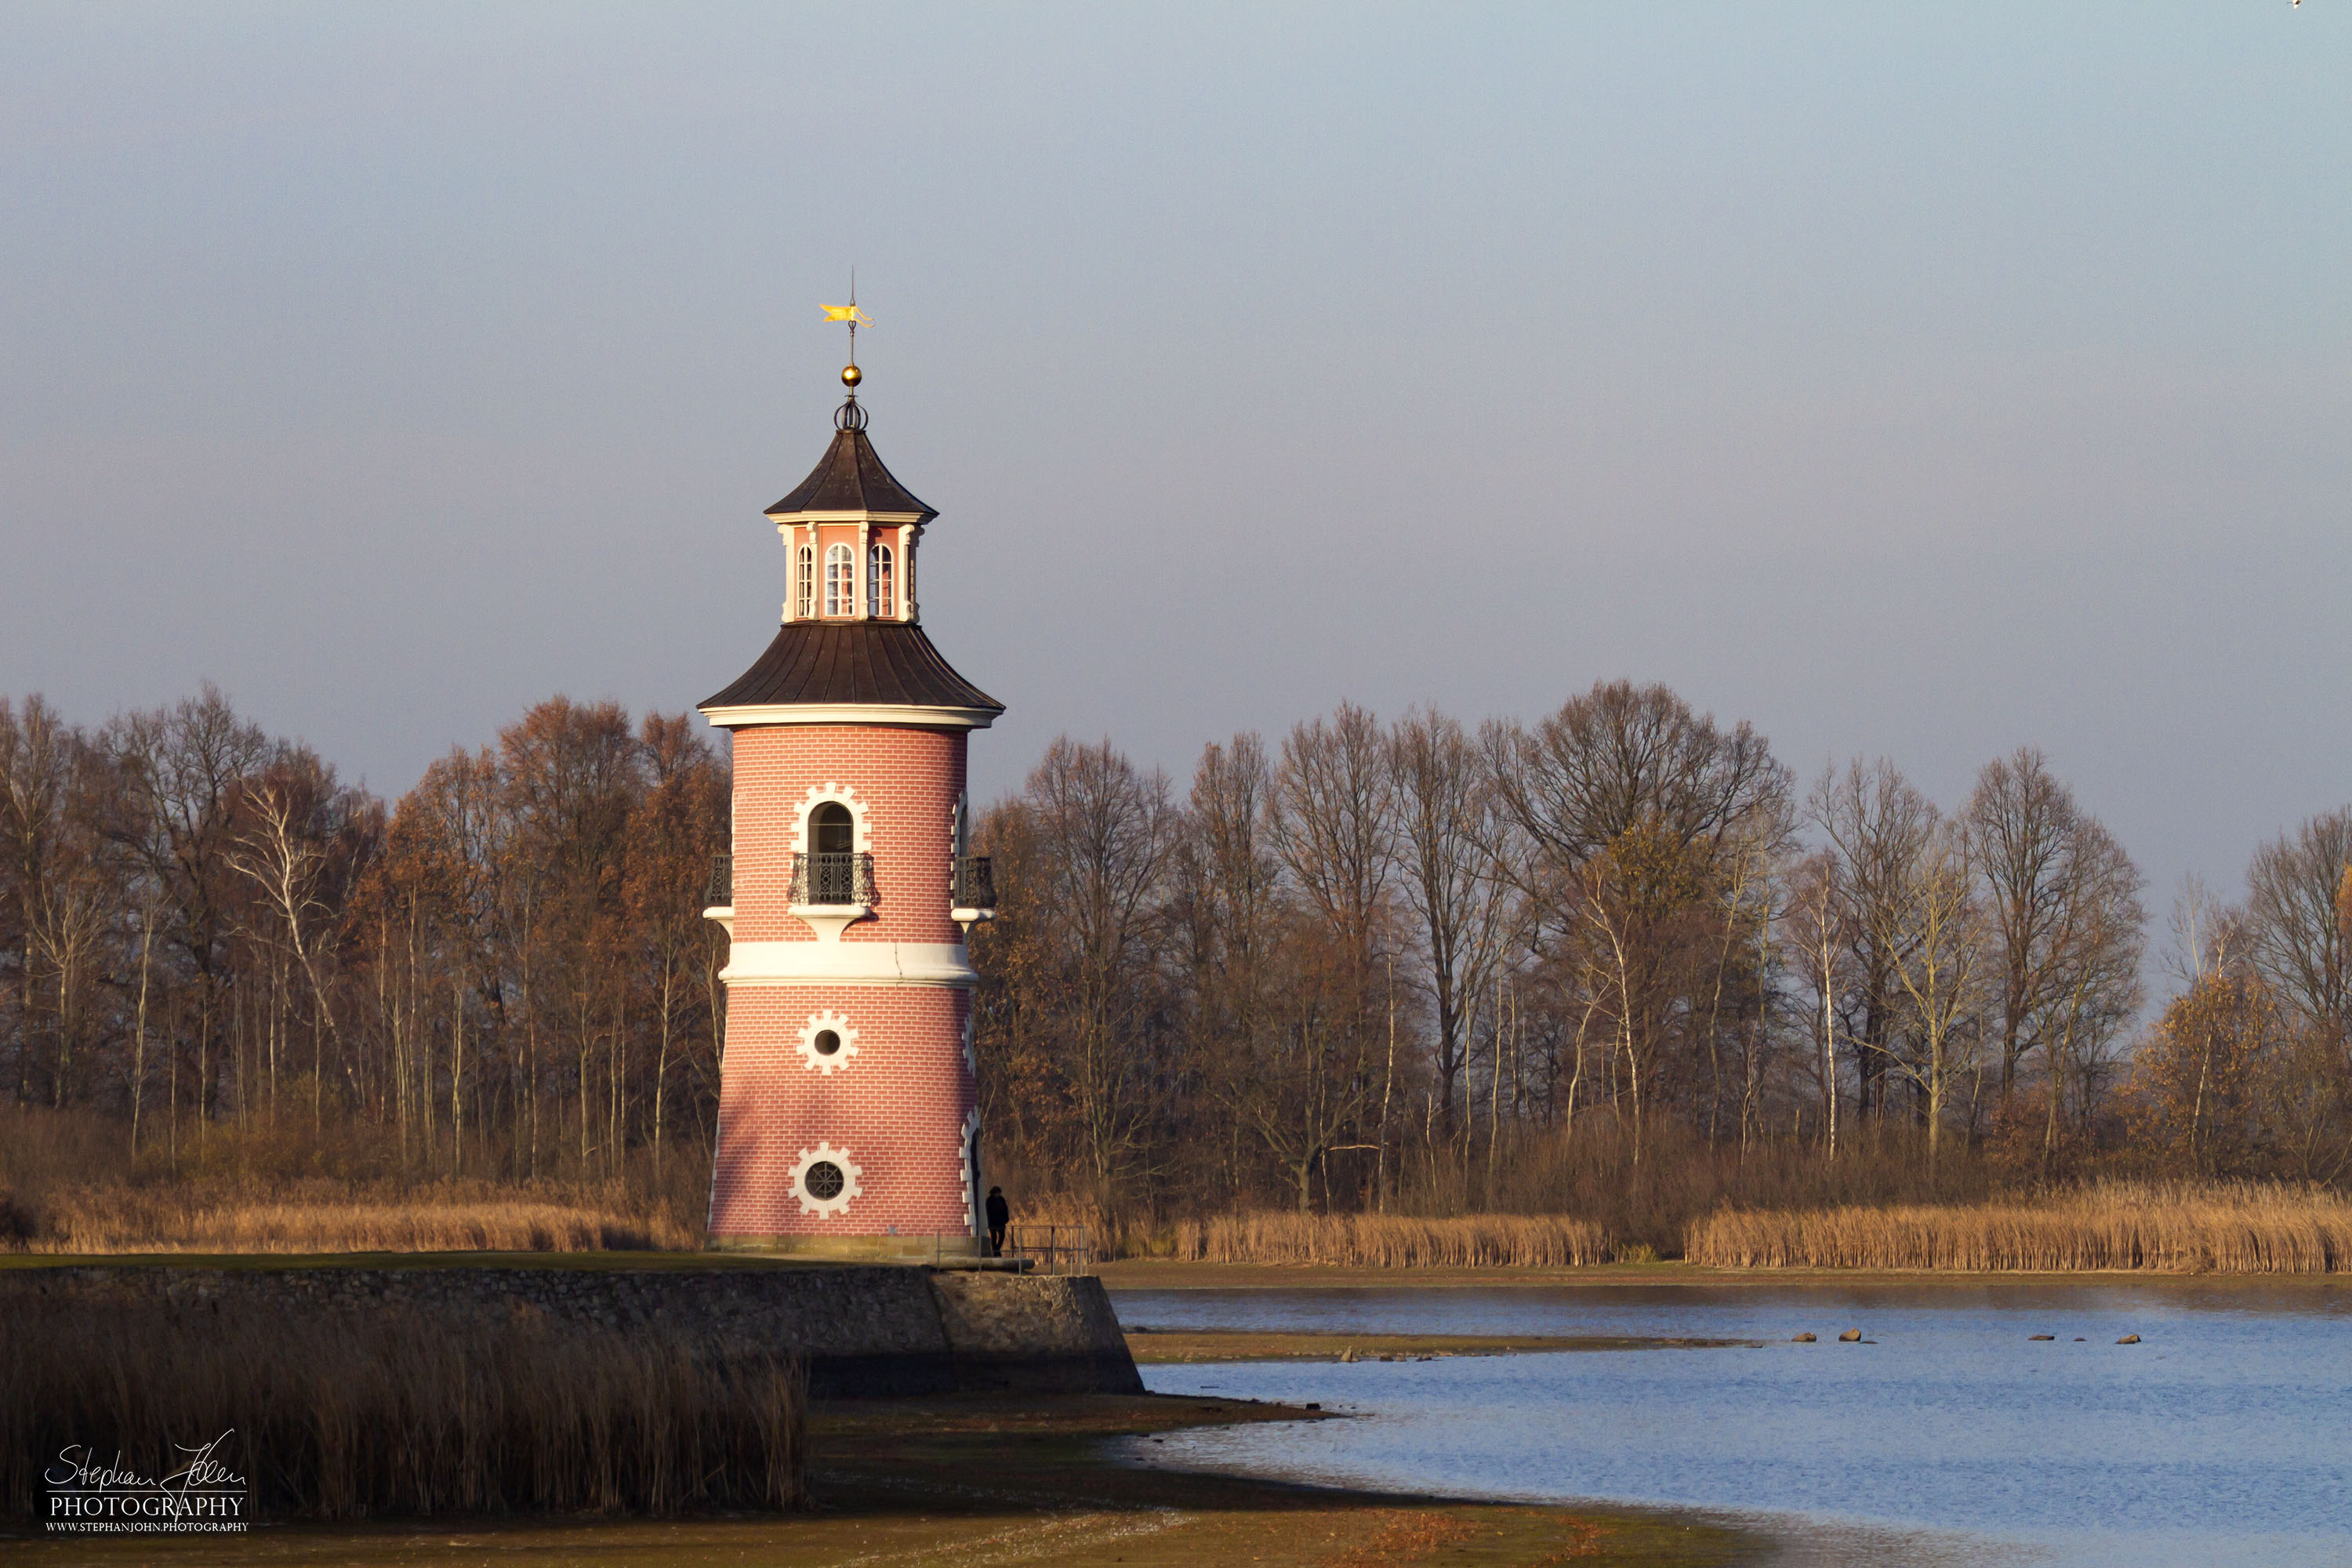 <p>Der Leuchtturm in Moritzburg ist ein Binnenleuchtturm in Sachsen. Der Staffagebau entstand im späten 18. Jahrhundert als Teil einer Kulisse für nachgestellte Seeschlachten. Er ist der einzige für diesen Zweck gebaute Leuchtturm in Deutschland und gleichzeitig einer der ältesten Binnenleuchttürme der Bundesrepublik.</p>